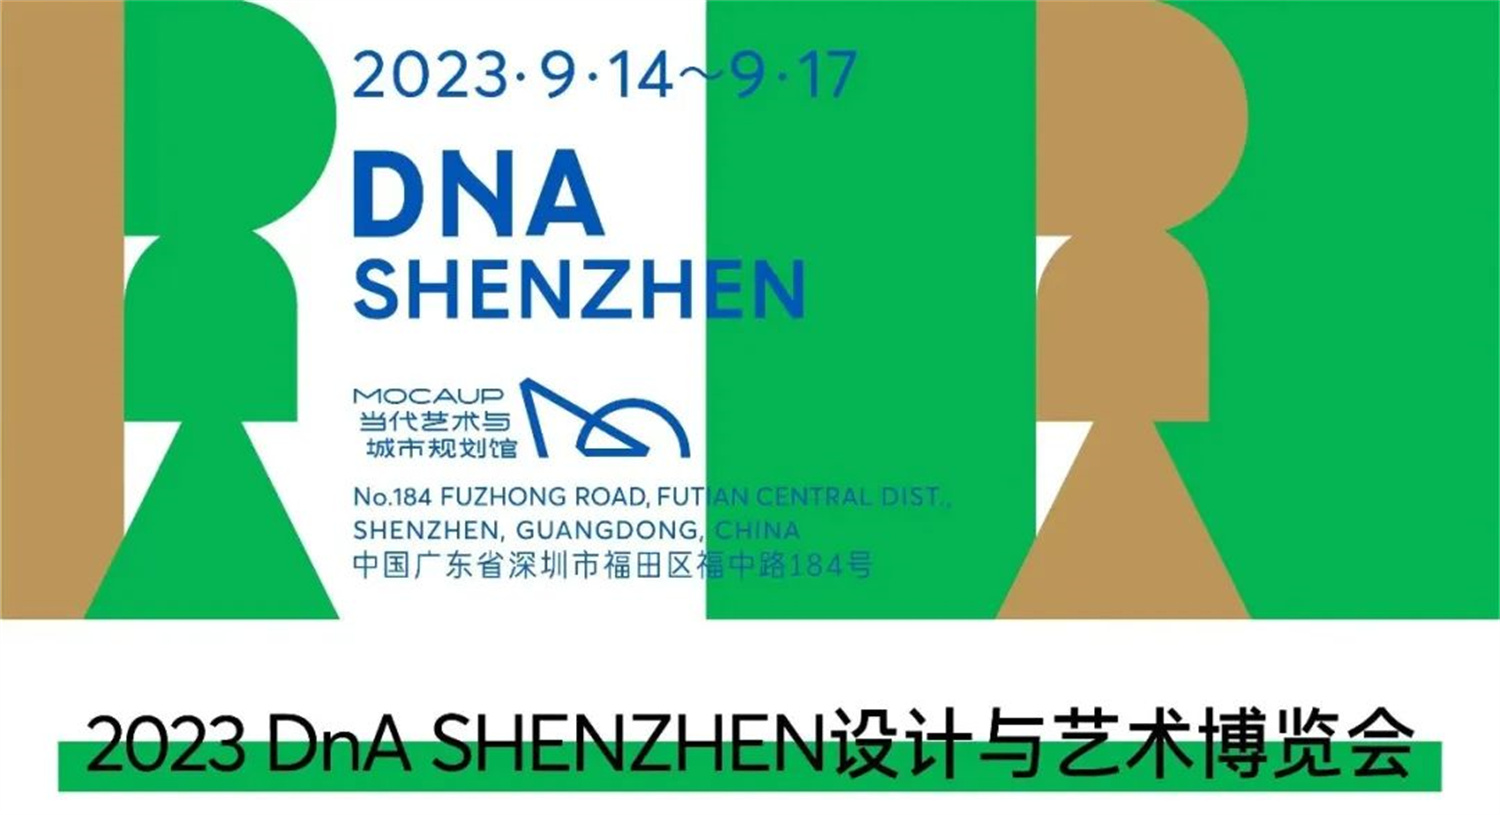 A2Z画廊参展DnA SHENZHEN设计与艺术博览会 I 展位A01